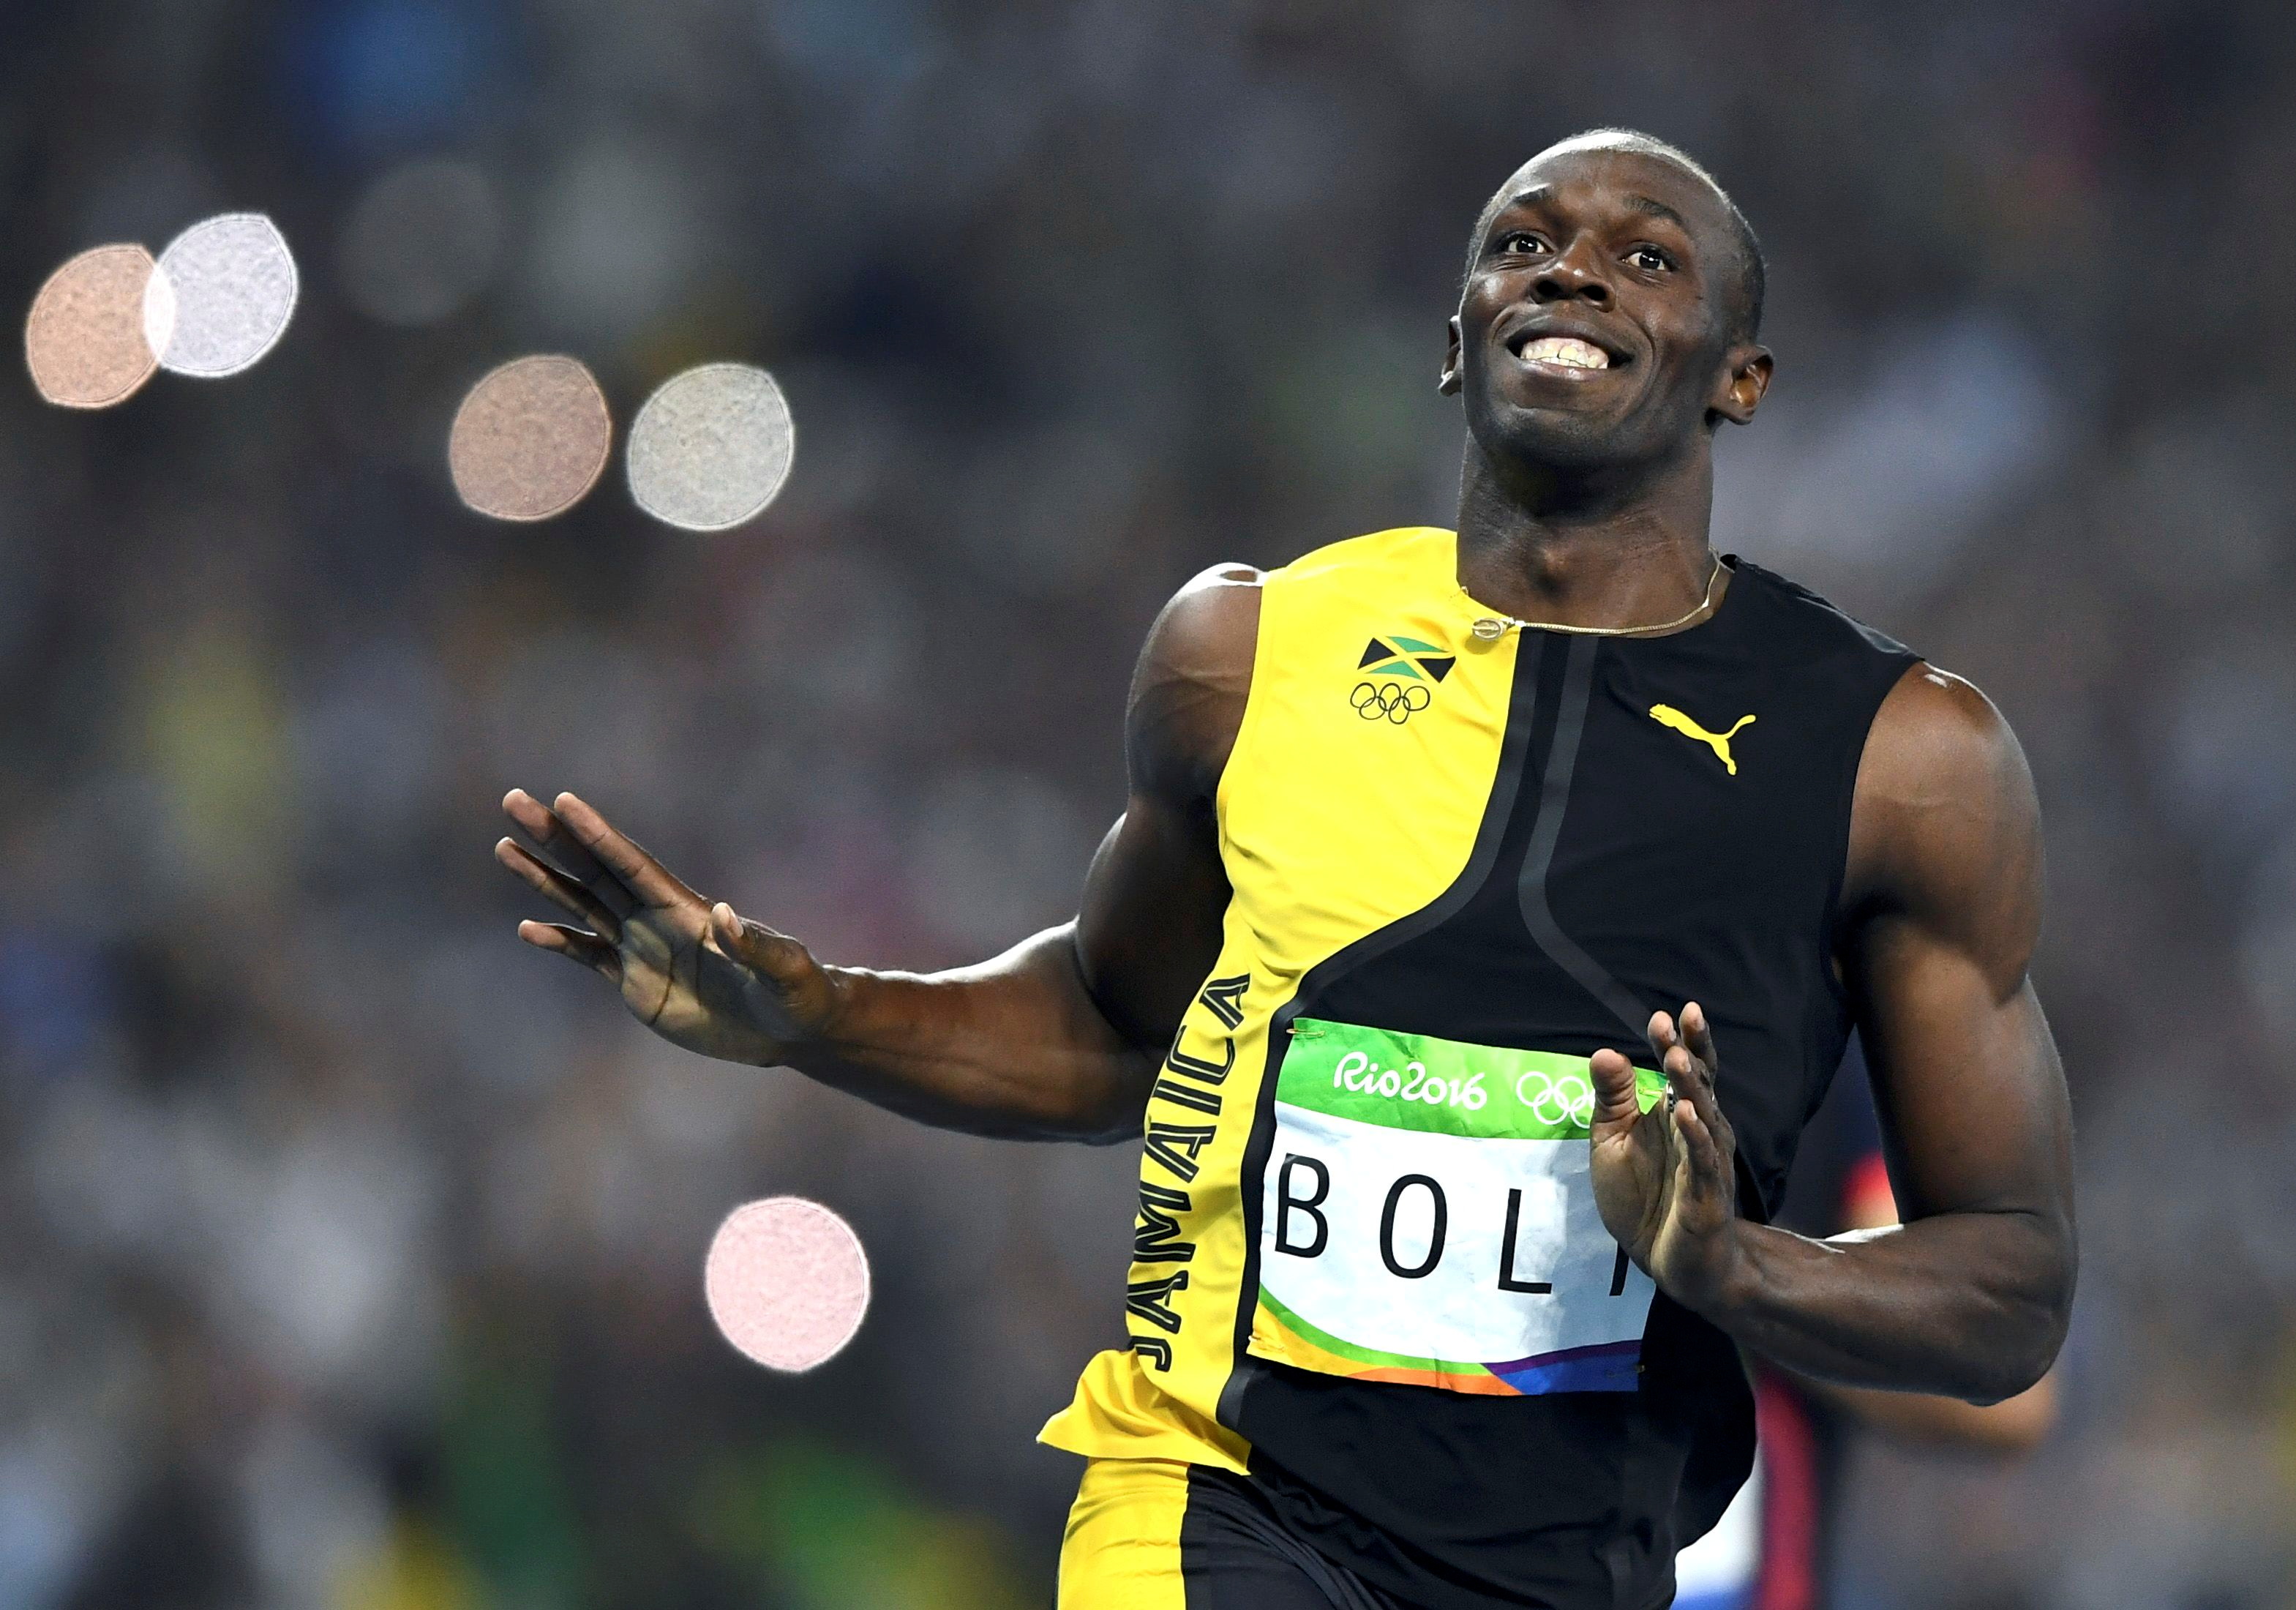 Usain Bolt ganó 8 medallas de oro durante su carrera y tiene el récord vigente de velocidad en 100 y 200 metros planos. (Foto: Dylan Martinez/REUTERS)